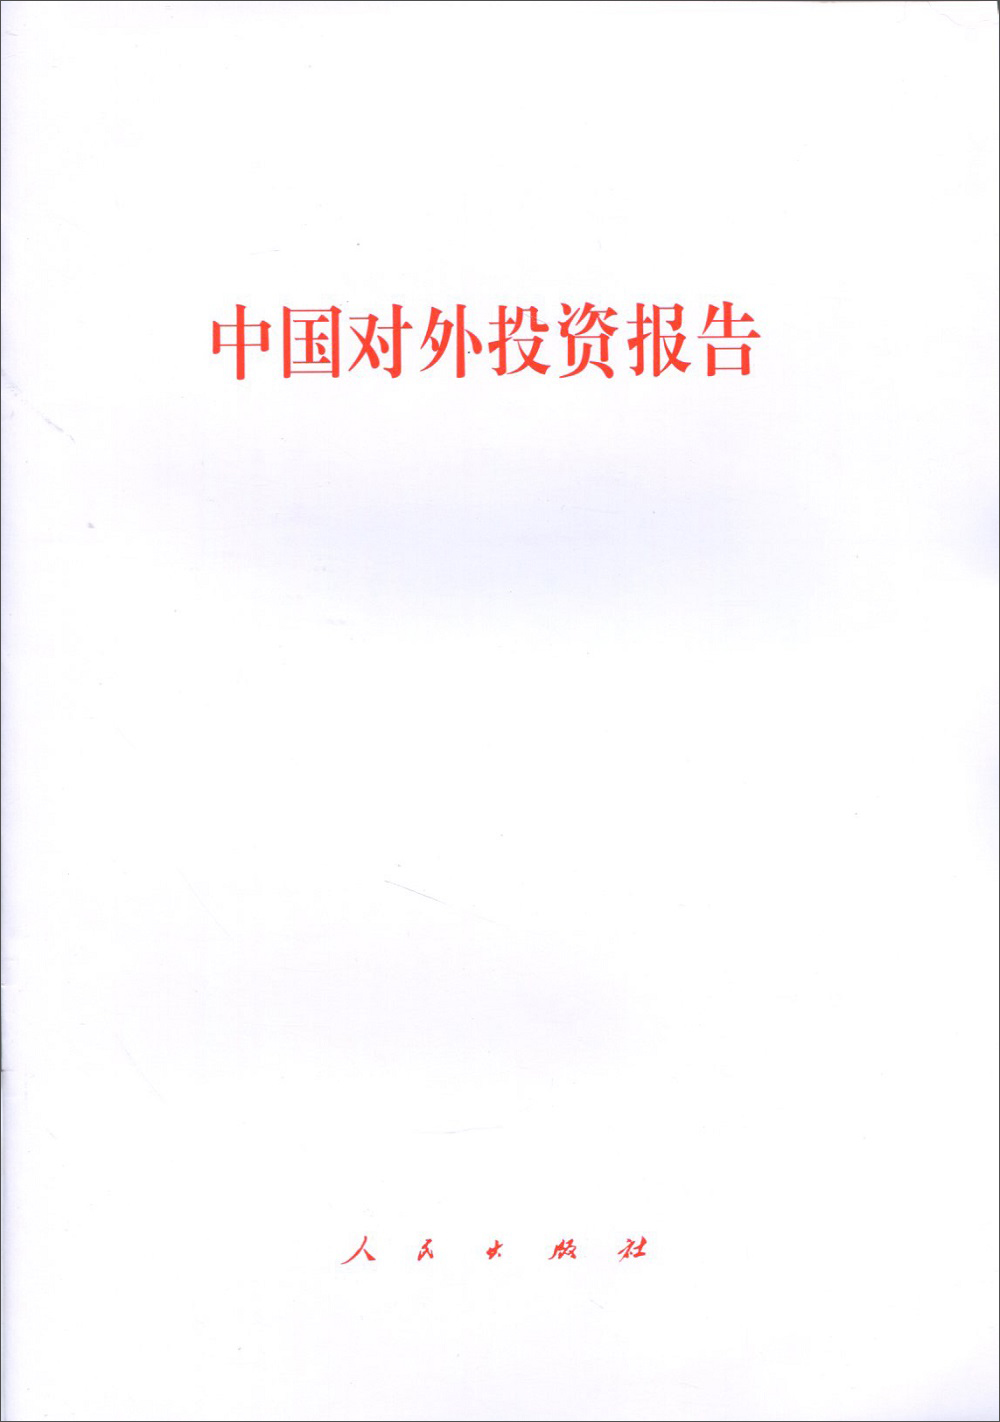 中国对外投资报告 azw3格式下载